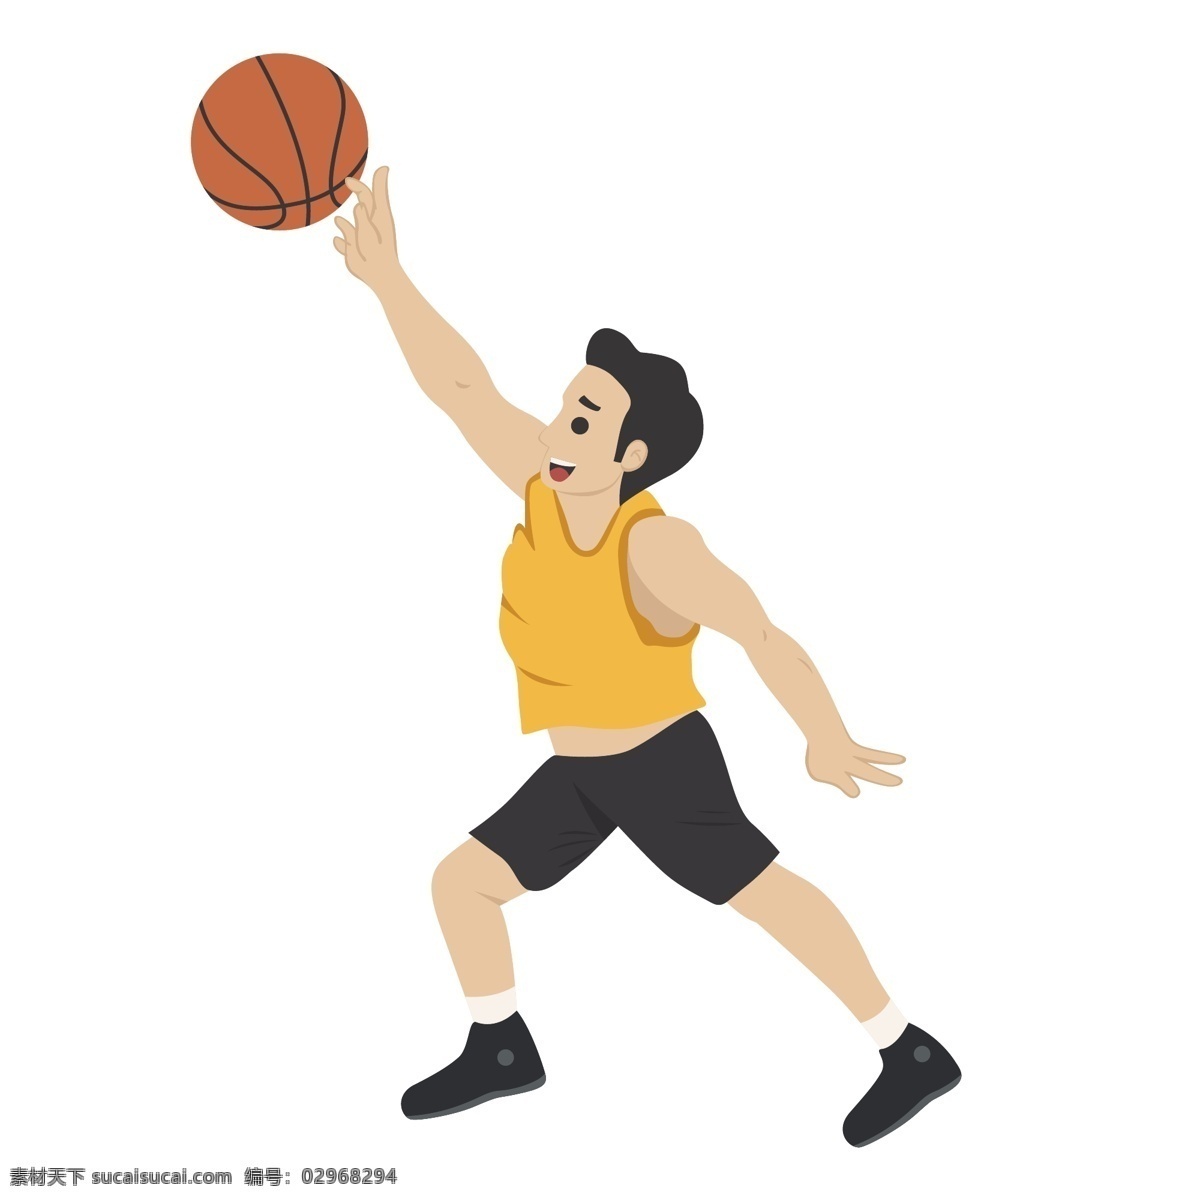 卡通 投篮 姿势 矢量 投篮姿势 篮球 打篮球 篮球运动员 运动员 卡通篮球 打篮球的男人 卡通男人 可爱男人